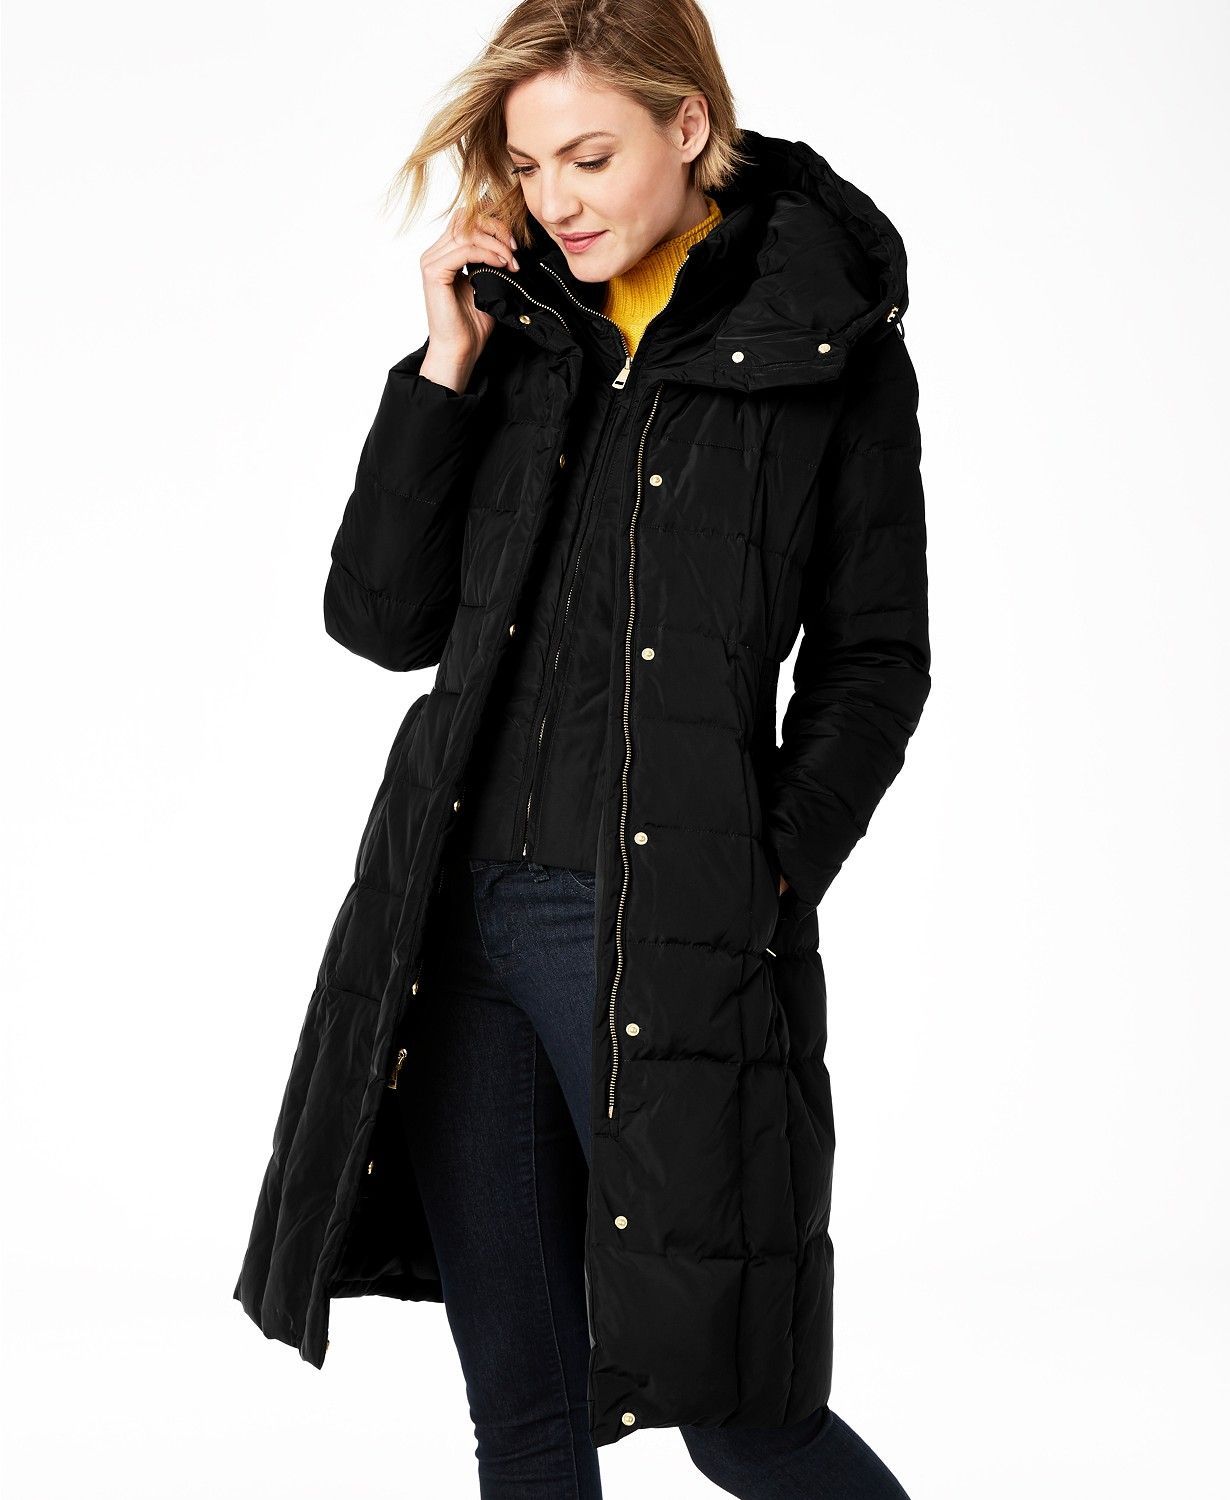 Women's Warm Coat Jacket Outwear Trench Winter Hooded Long Parka Overcoat Tops